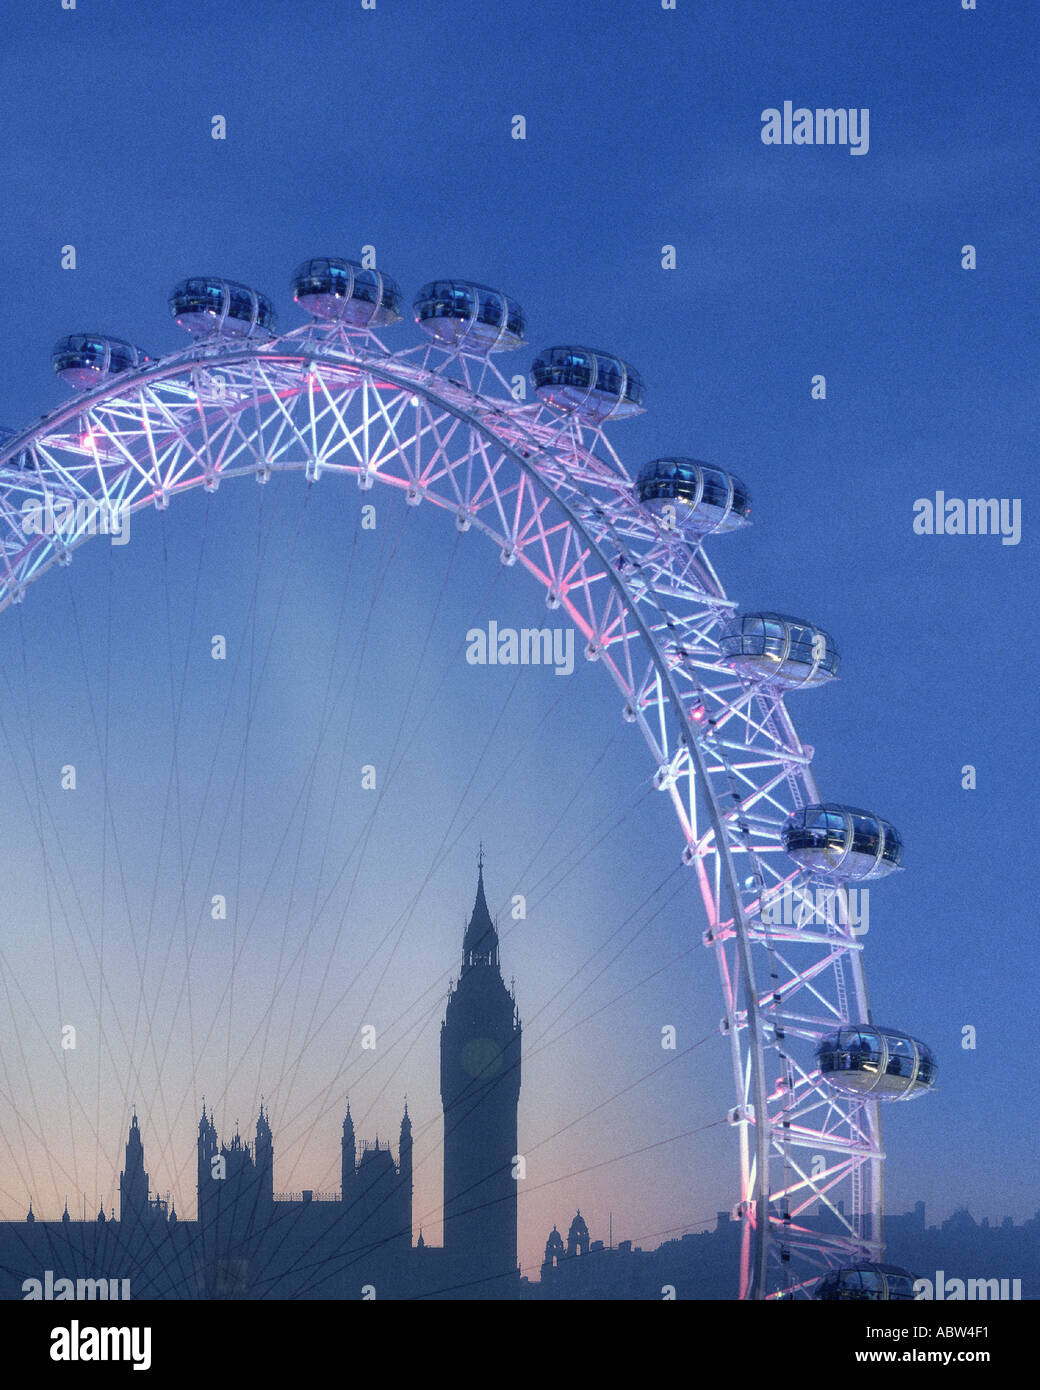 GB - Londres : le London Eye et Big Ben (Elizabeth Tower) par nuit Banque D'Images